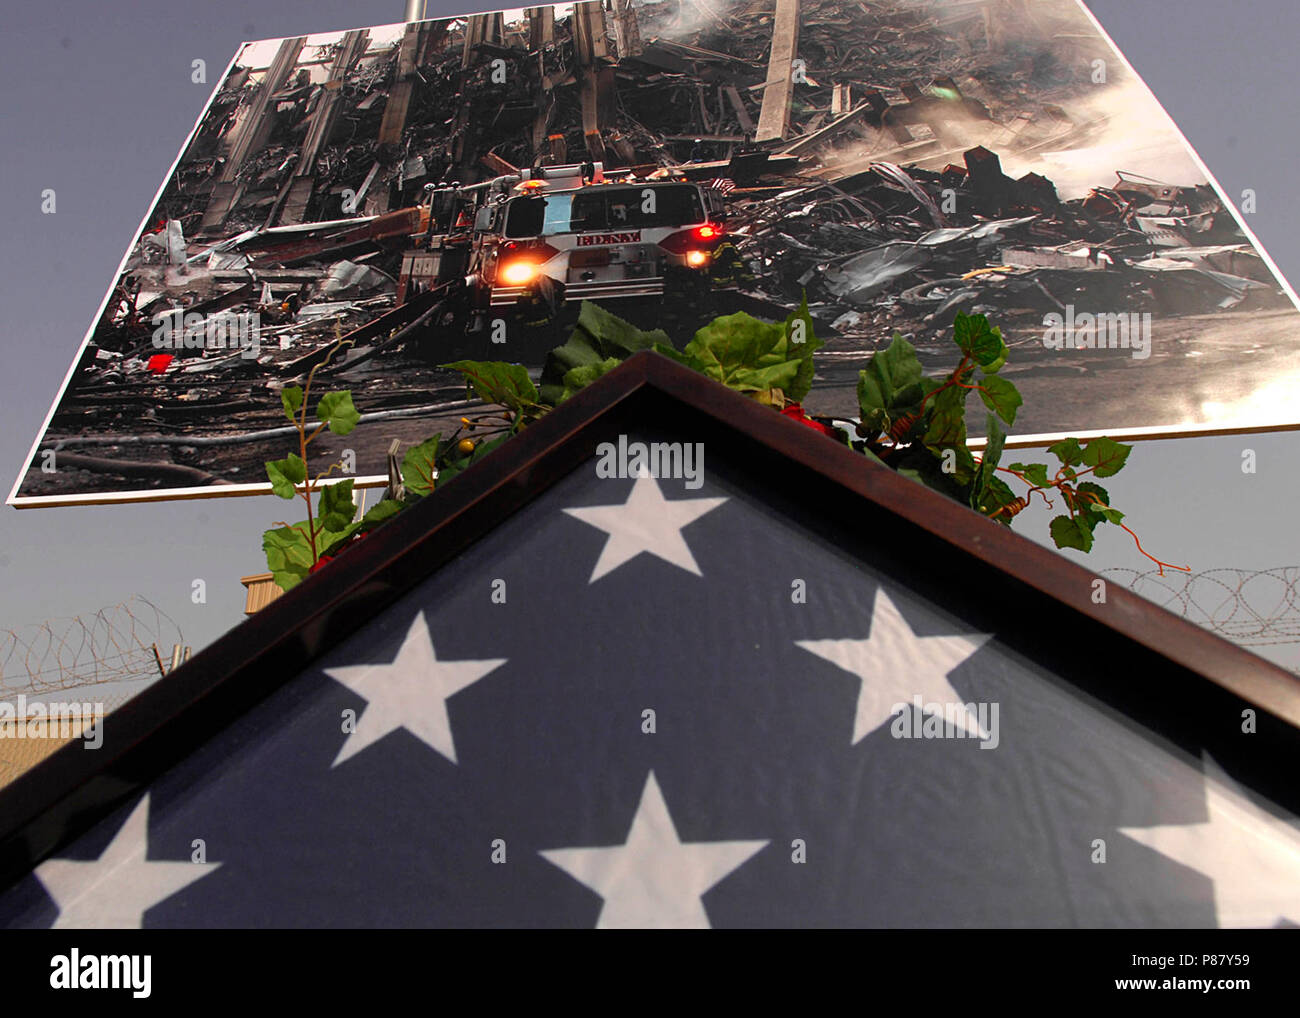 4 soldati ID ricordare 9-11 vittime DVIDS115083. Ripiegata di bandiera americana si siede sotto una foto della devastazione delle Torri Gemelle a New York City. Membri della MND-B si sono riuniti per ricordare le vittime degli attacchi di 9/11 su Camp Liberty, Bagdad il 7 settembre 11, 2008. Foto Stock